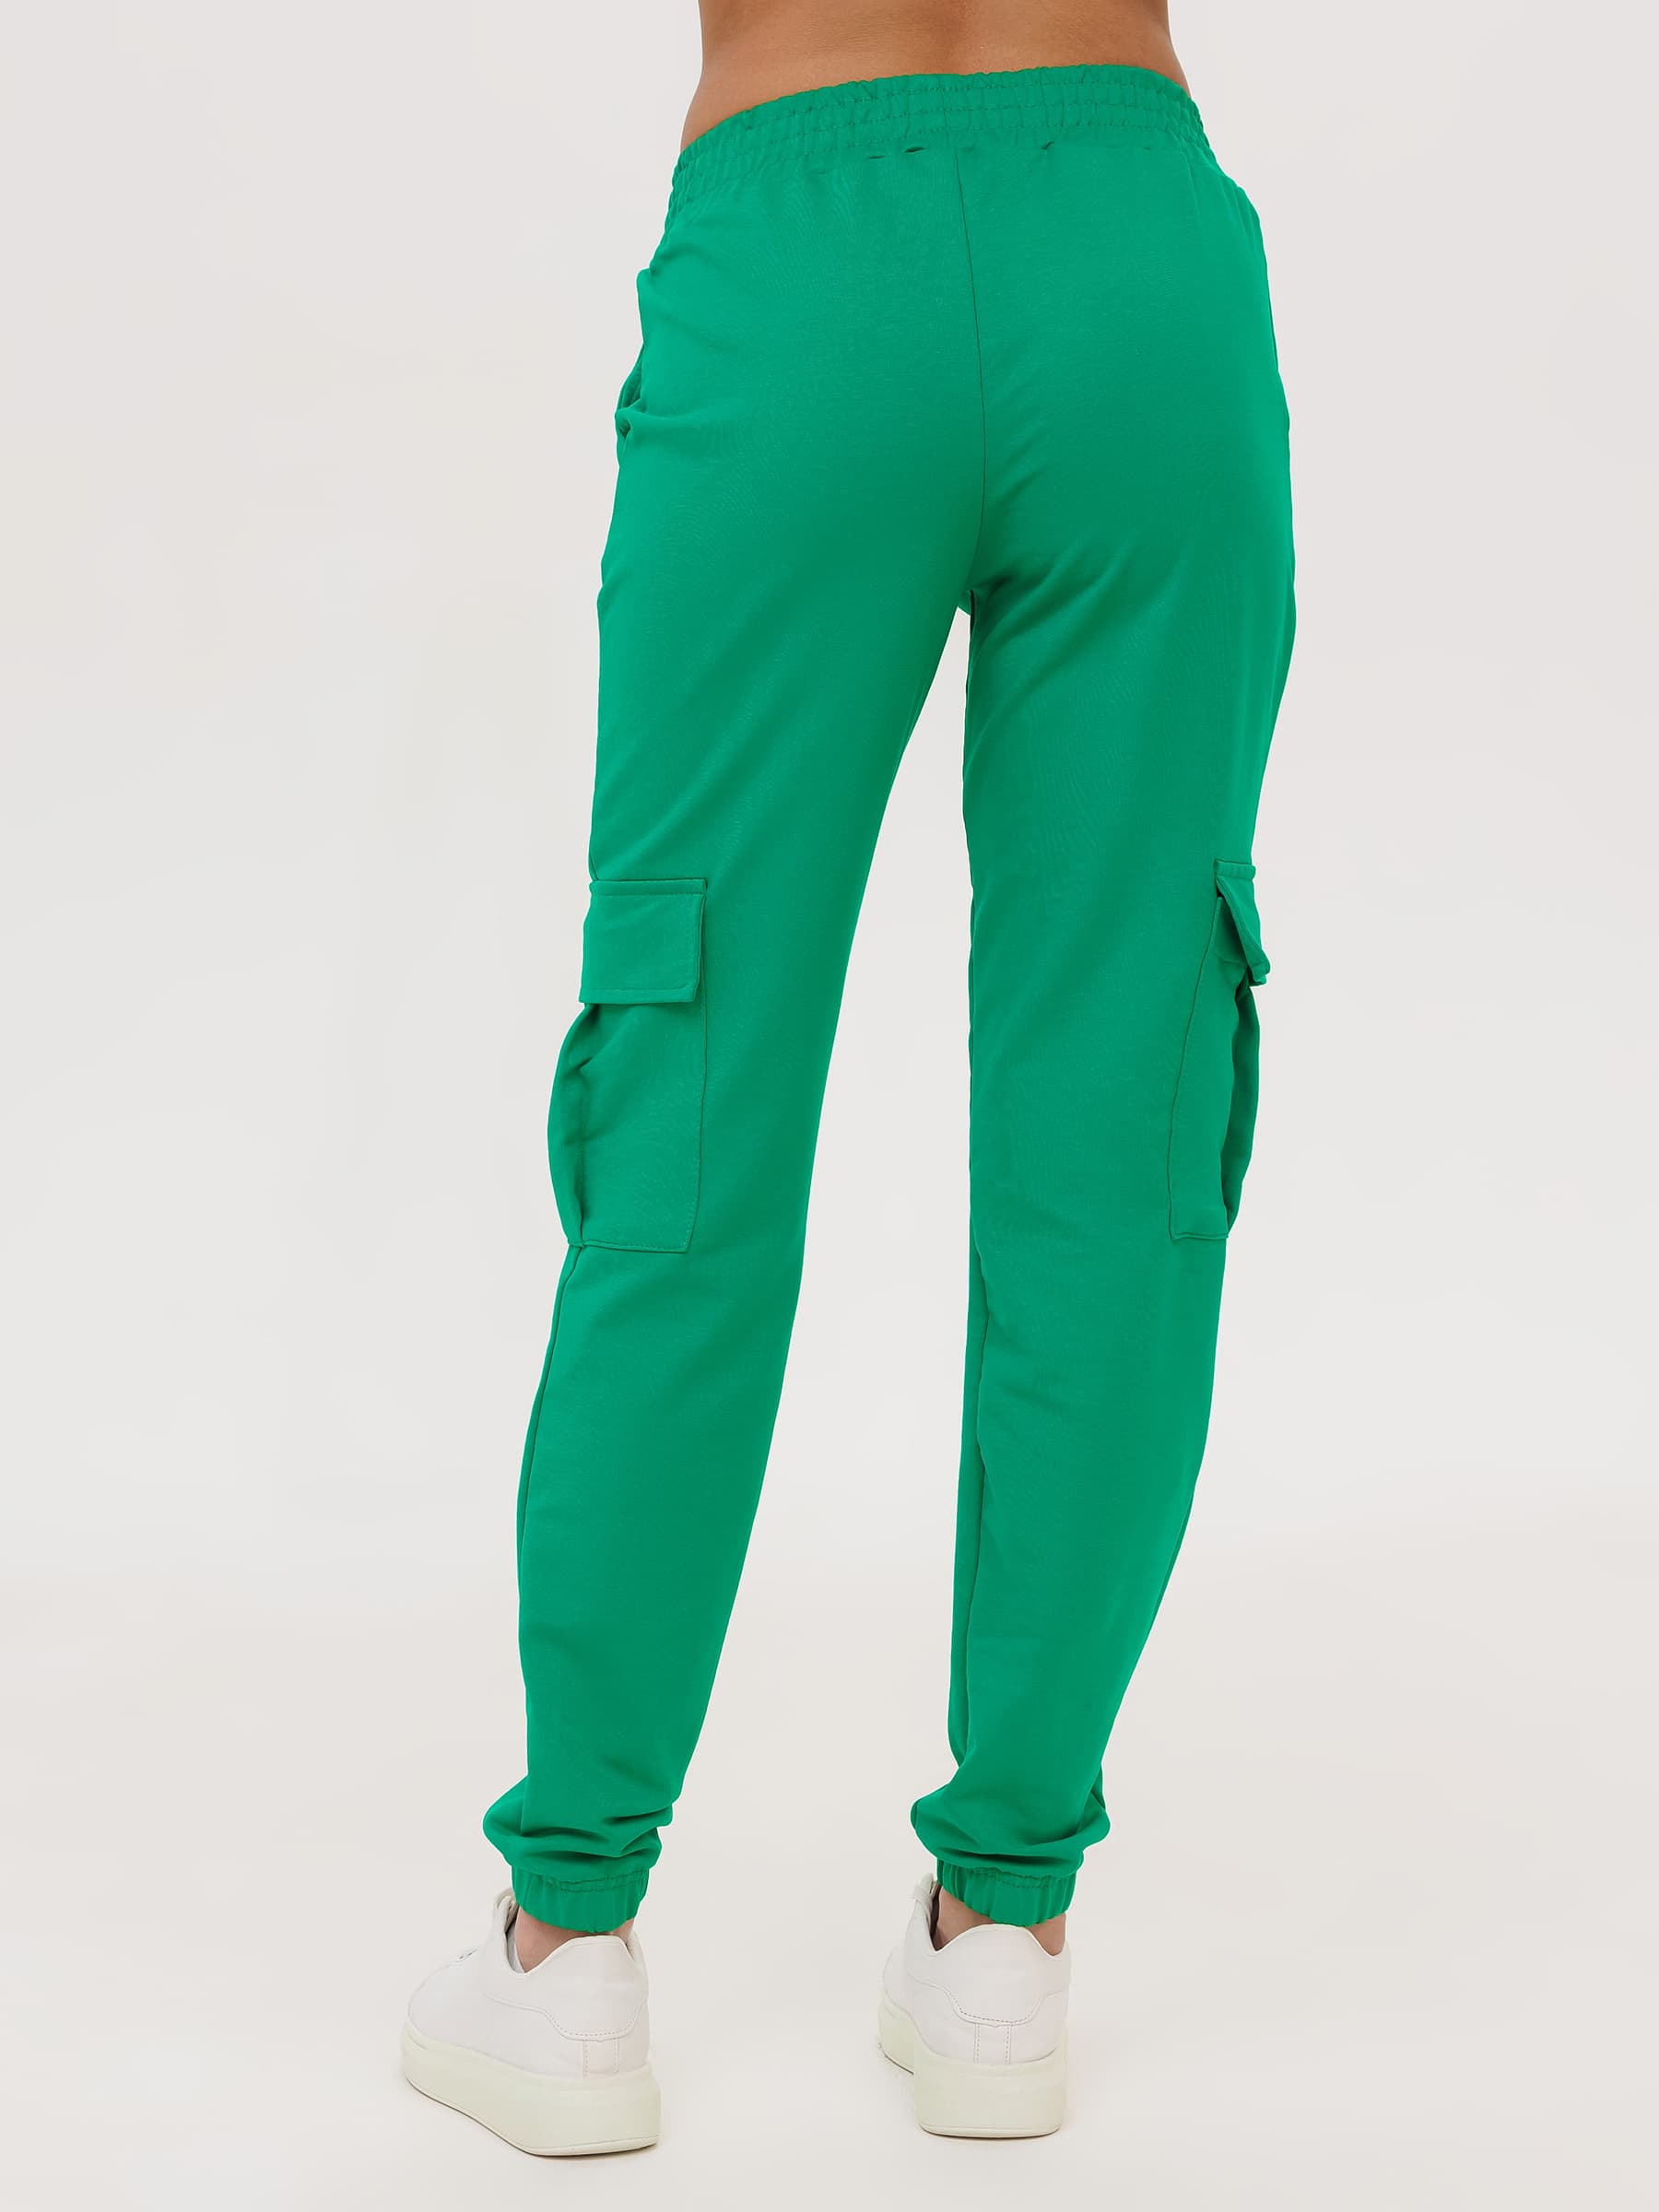 Жен. брюки повседневные арт. 23-0524 Зеленый р. 42 Моделлини, размер 42 - фото 10